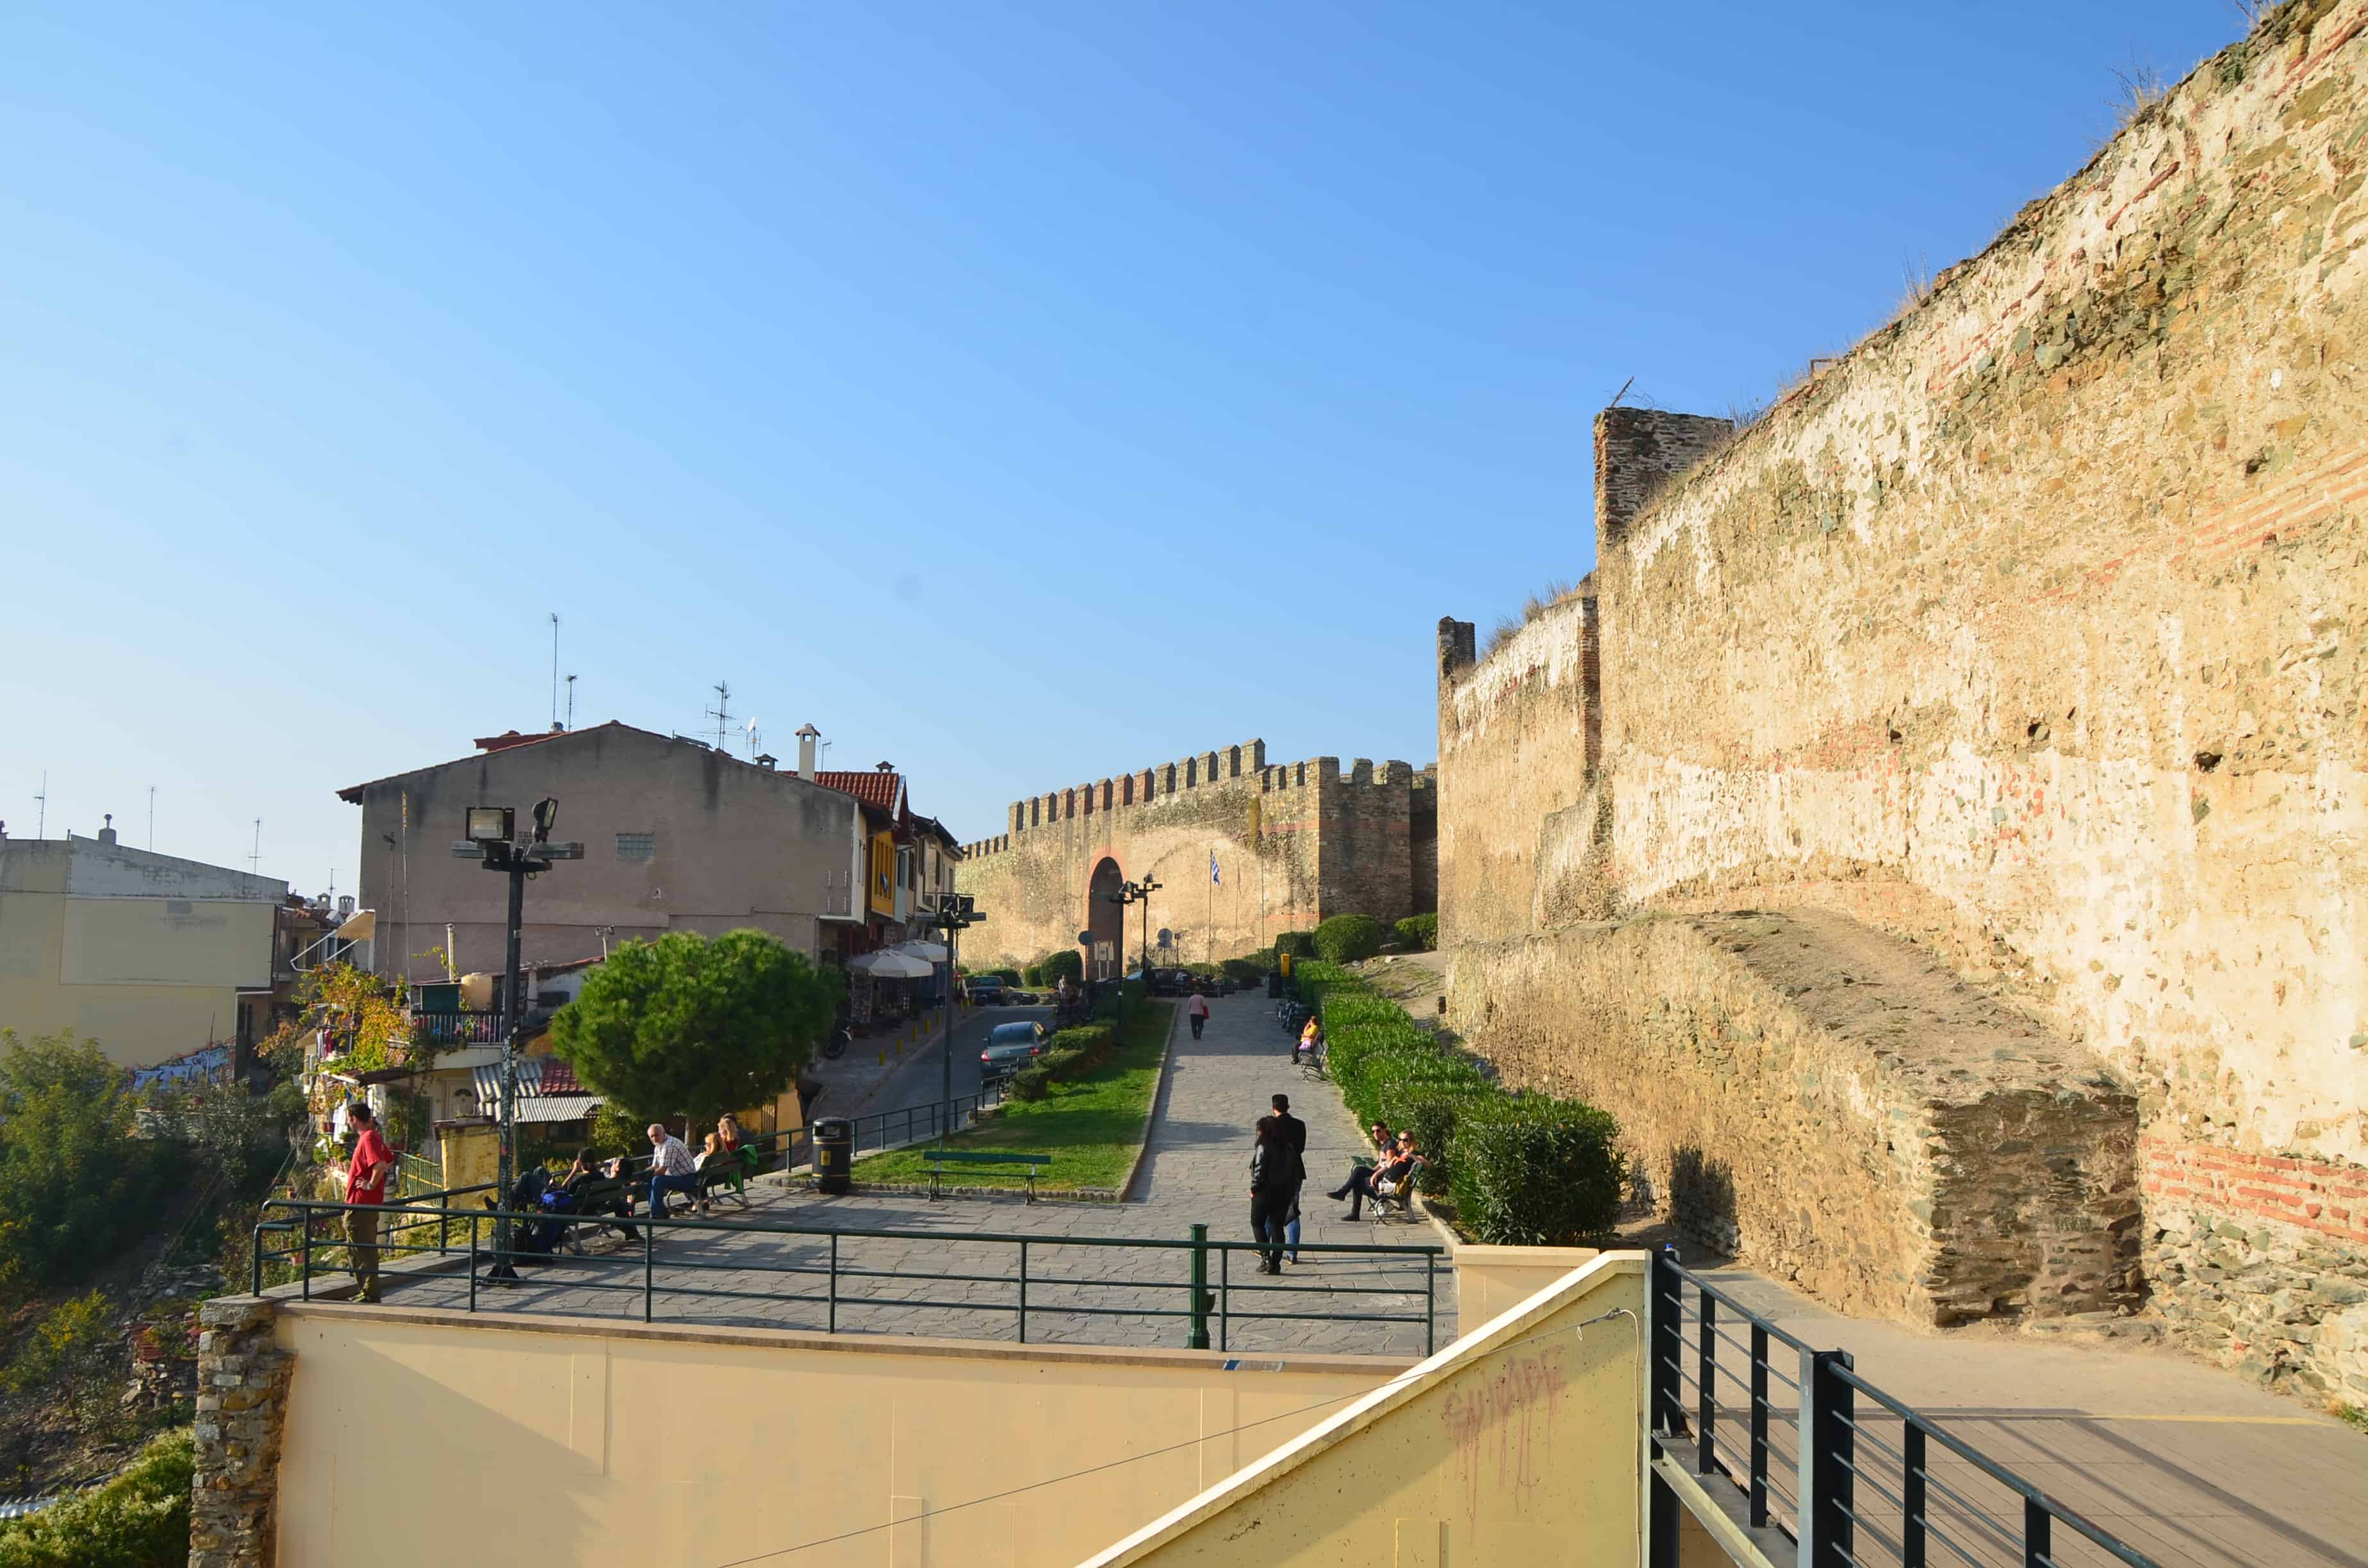 City walls in Thessaloniki, Greece